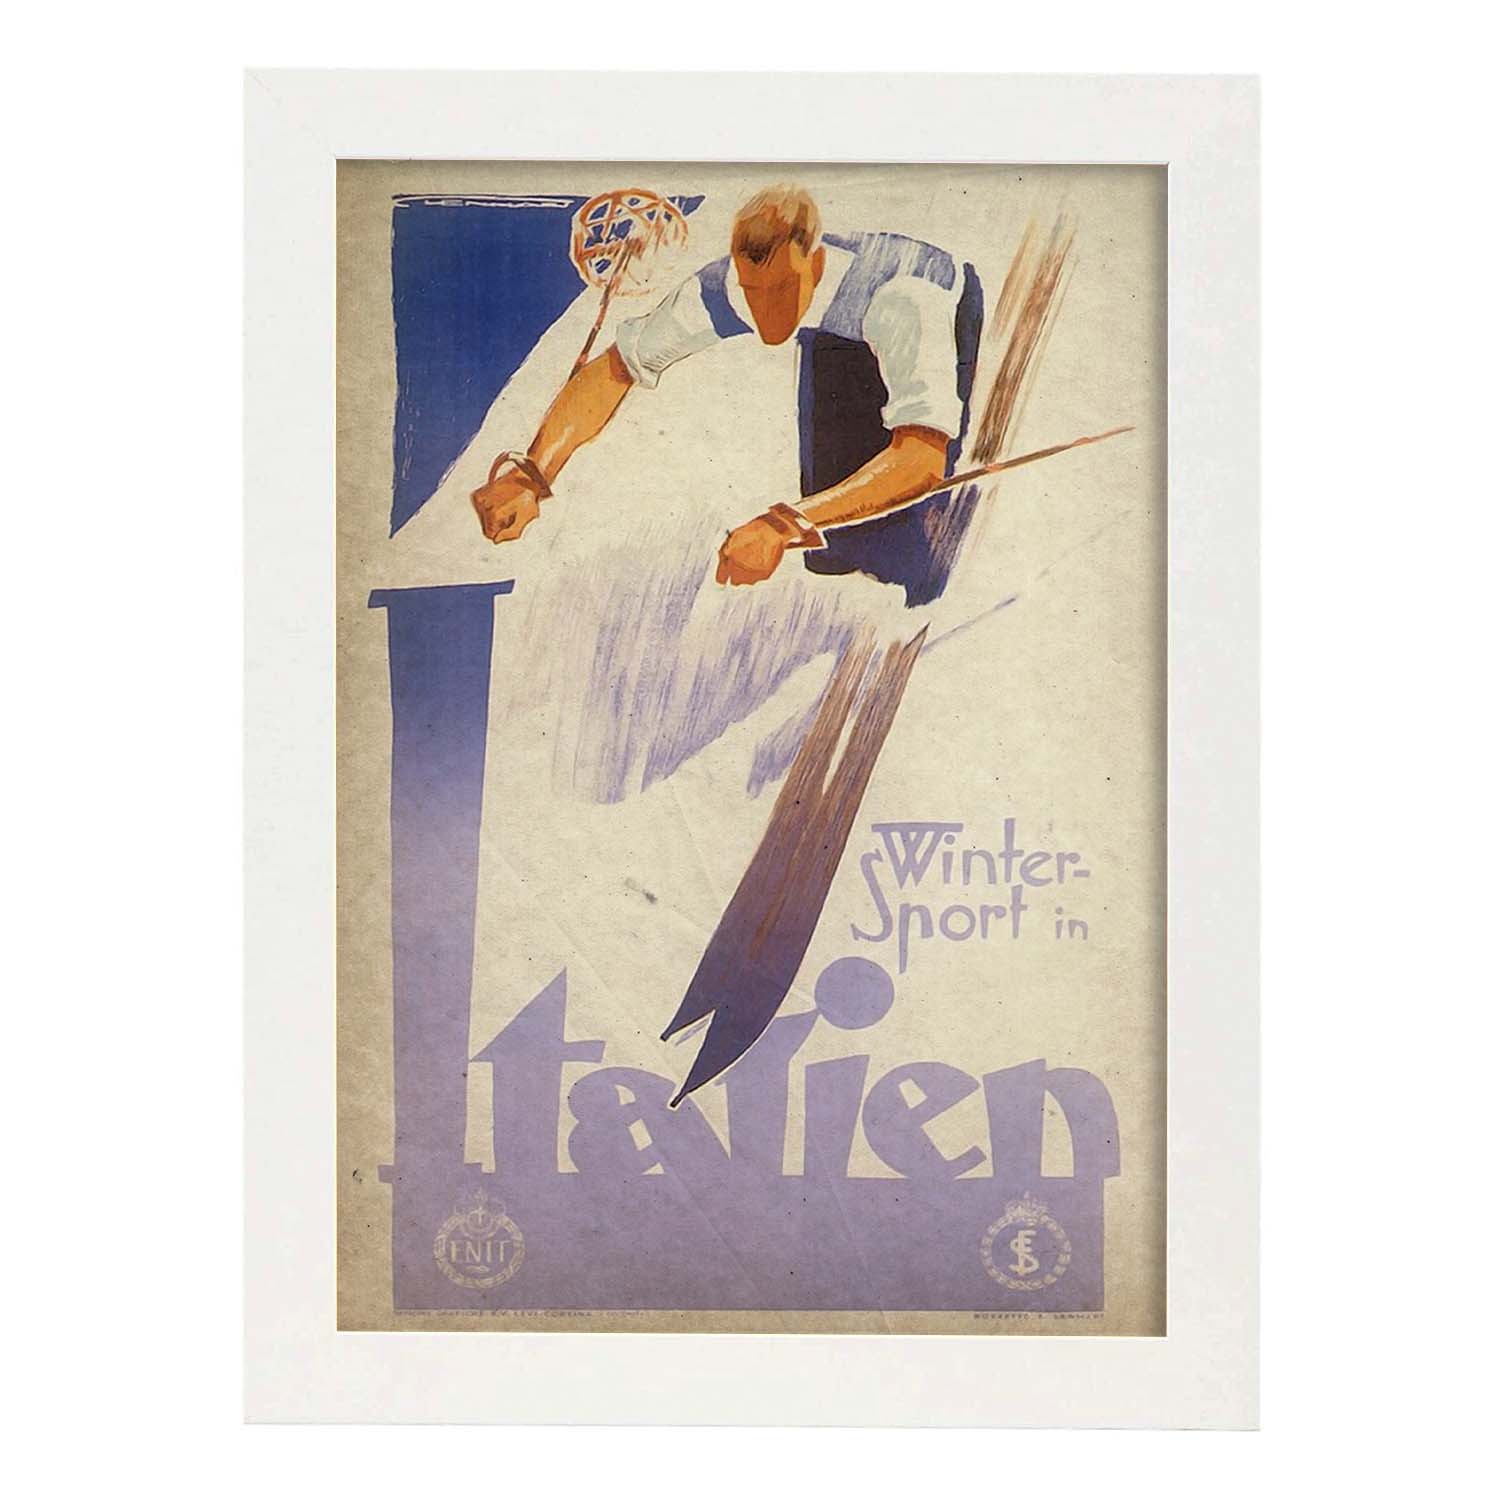 Poster vintage de Ski en Italia. con imágenes vintage y de publicidad antigua.-Artwork-Nacnic-A3-Marco Blanco-Nacnic Estudio SL